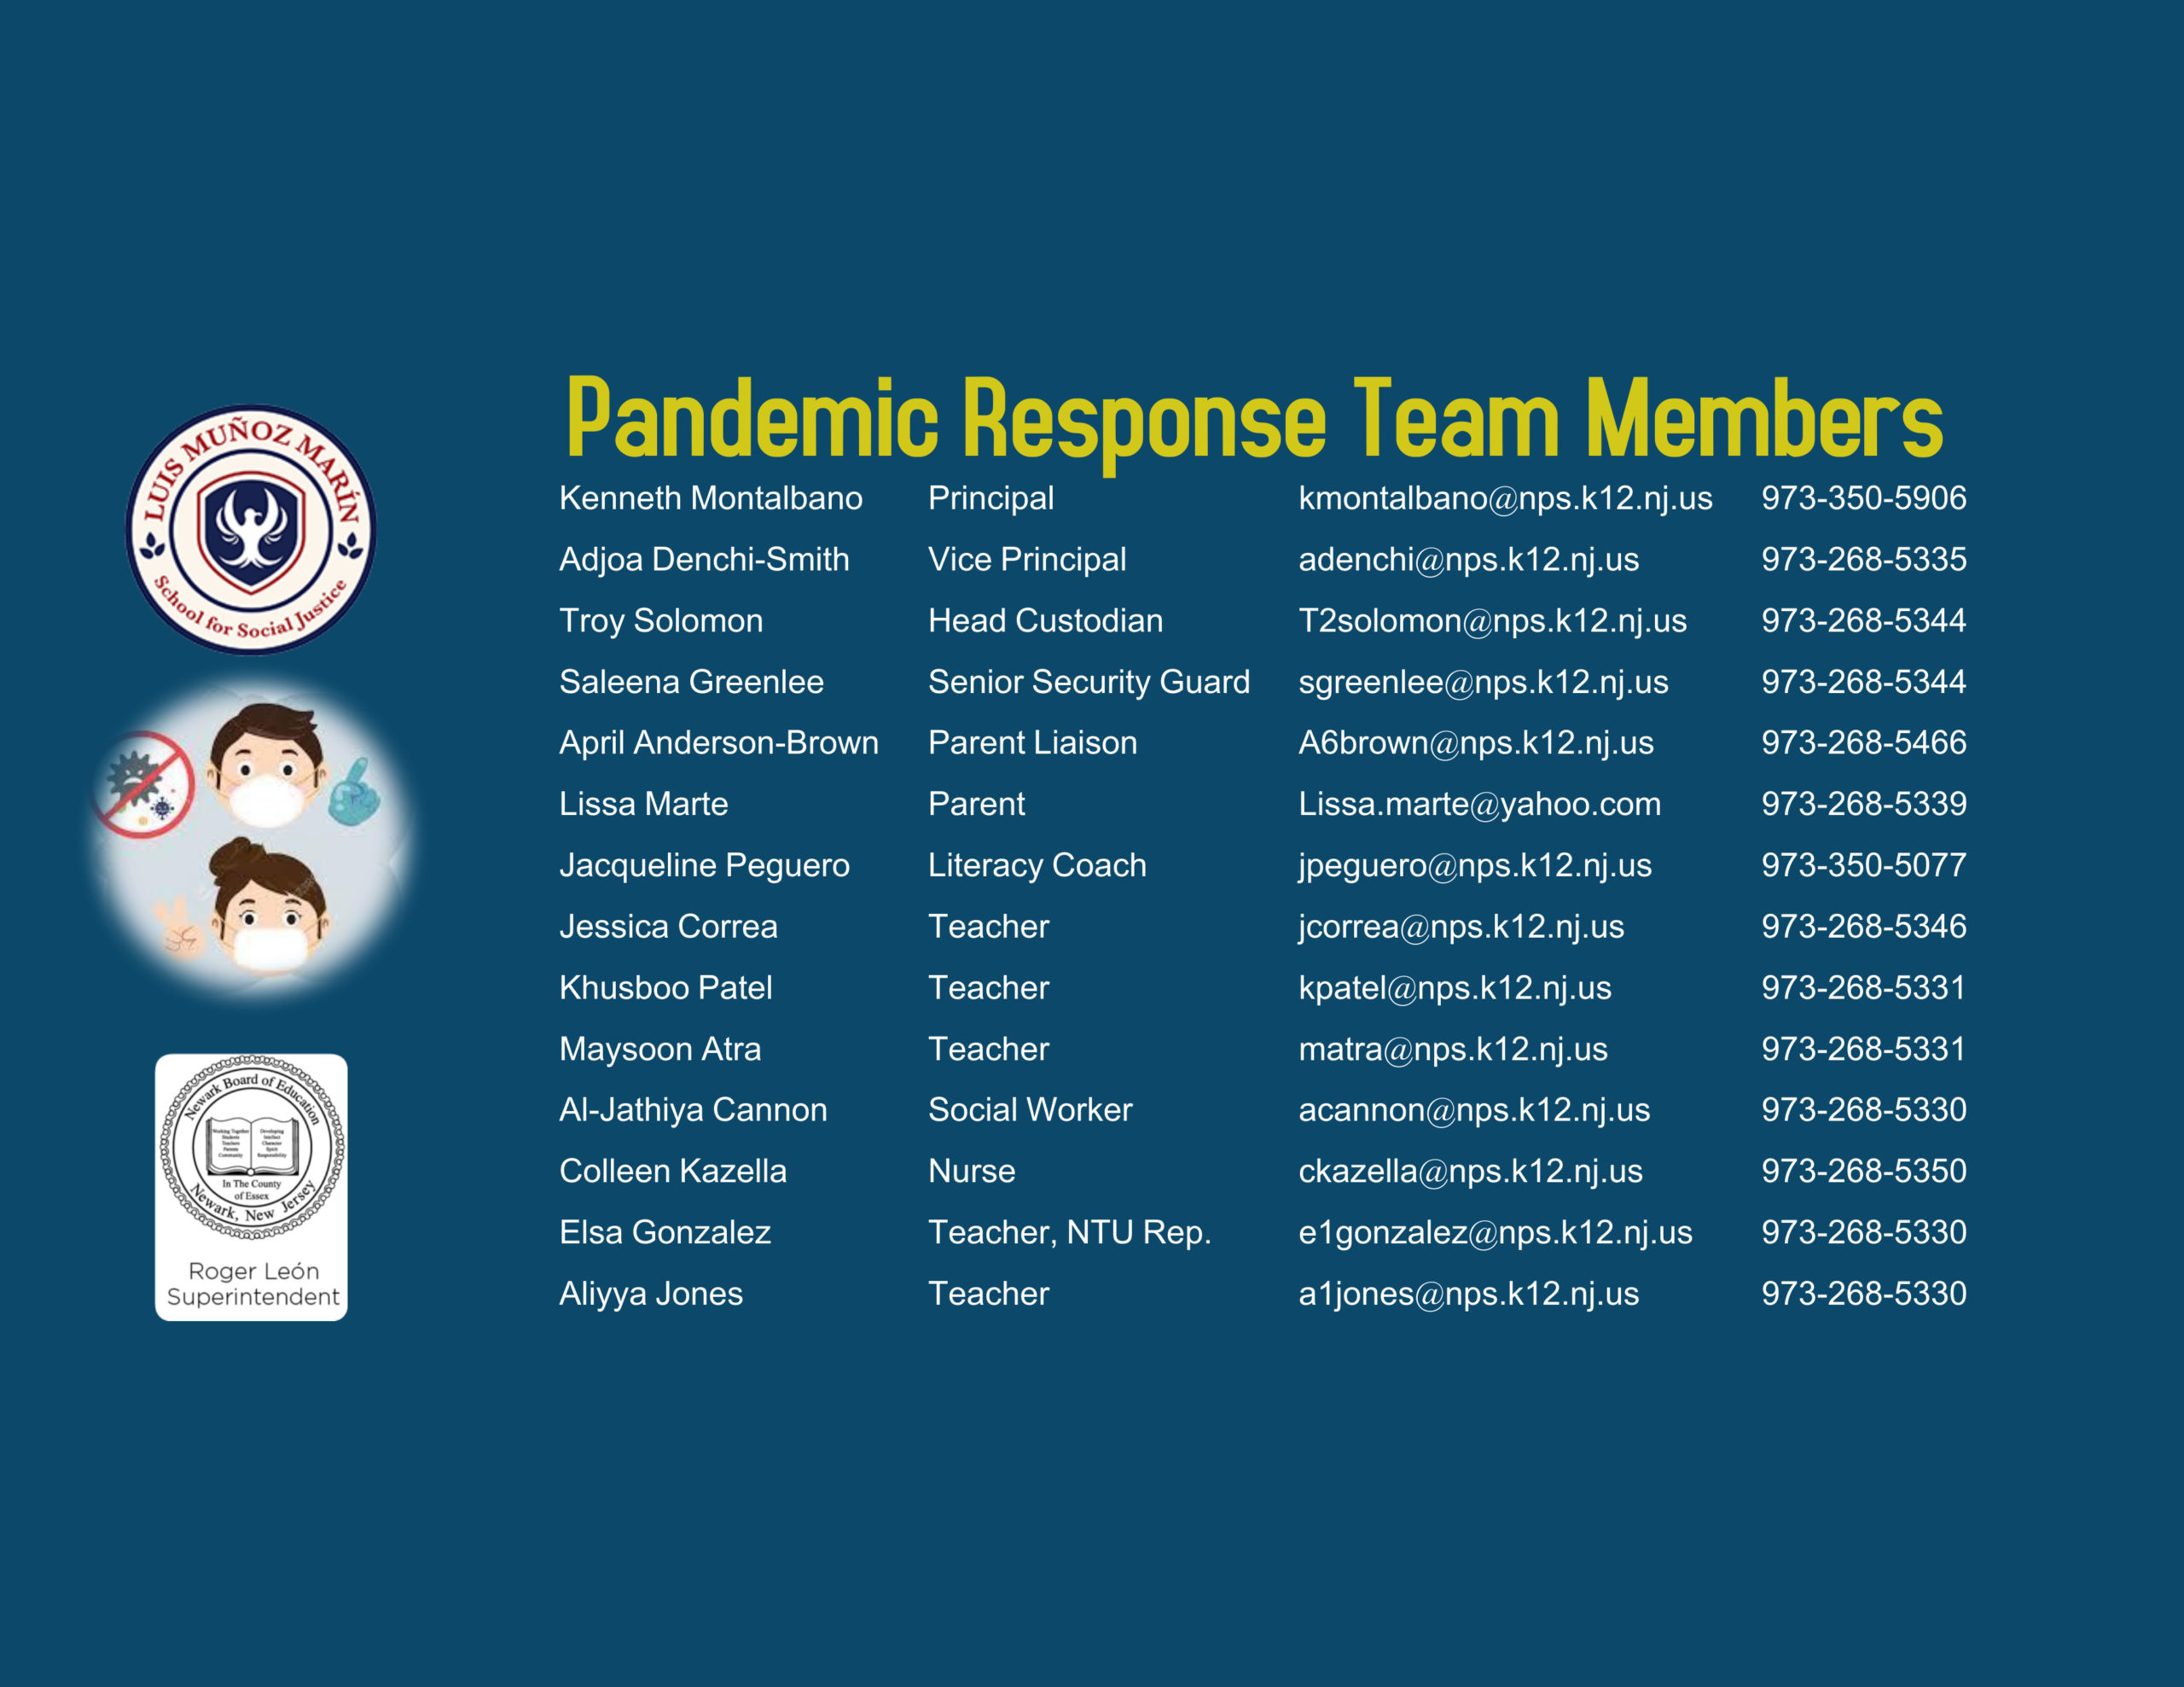 Pandemic Response members